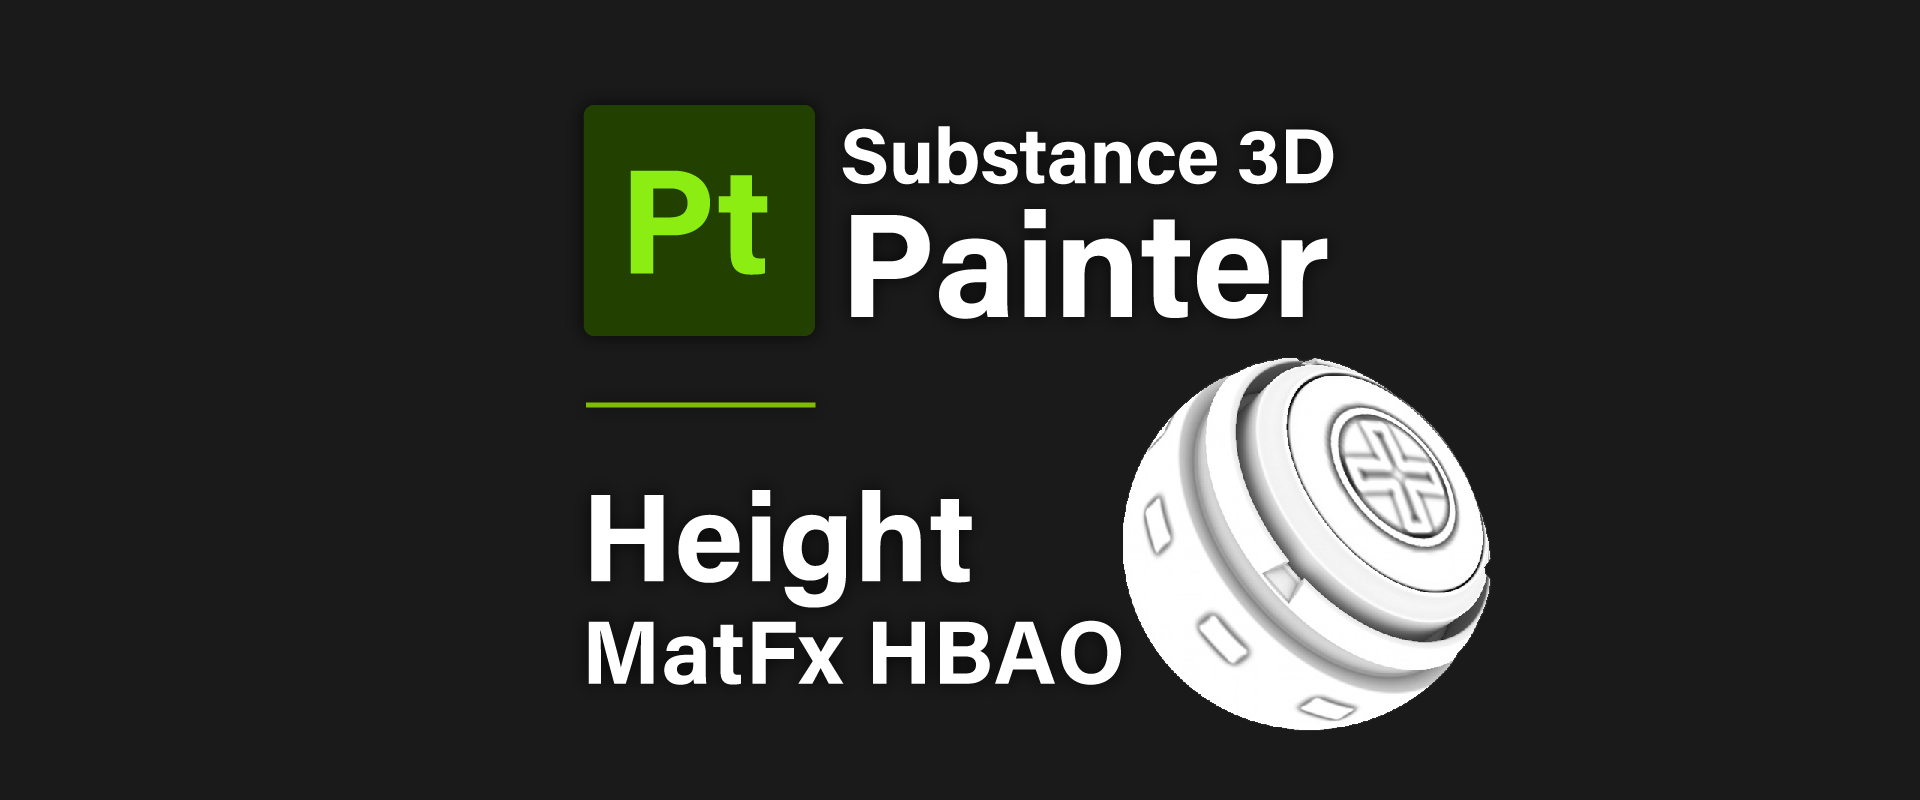 [ Substance 3D Painter ] ハイトマップの追加と調整方法